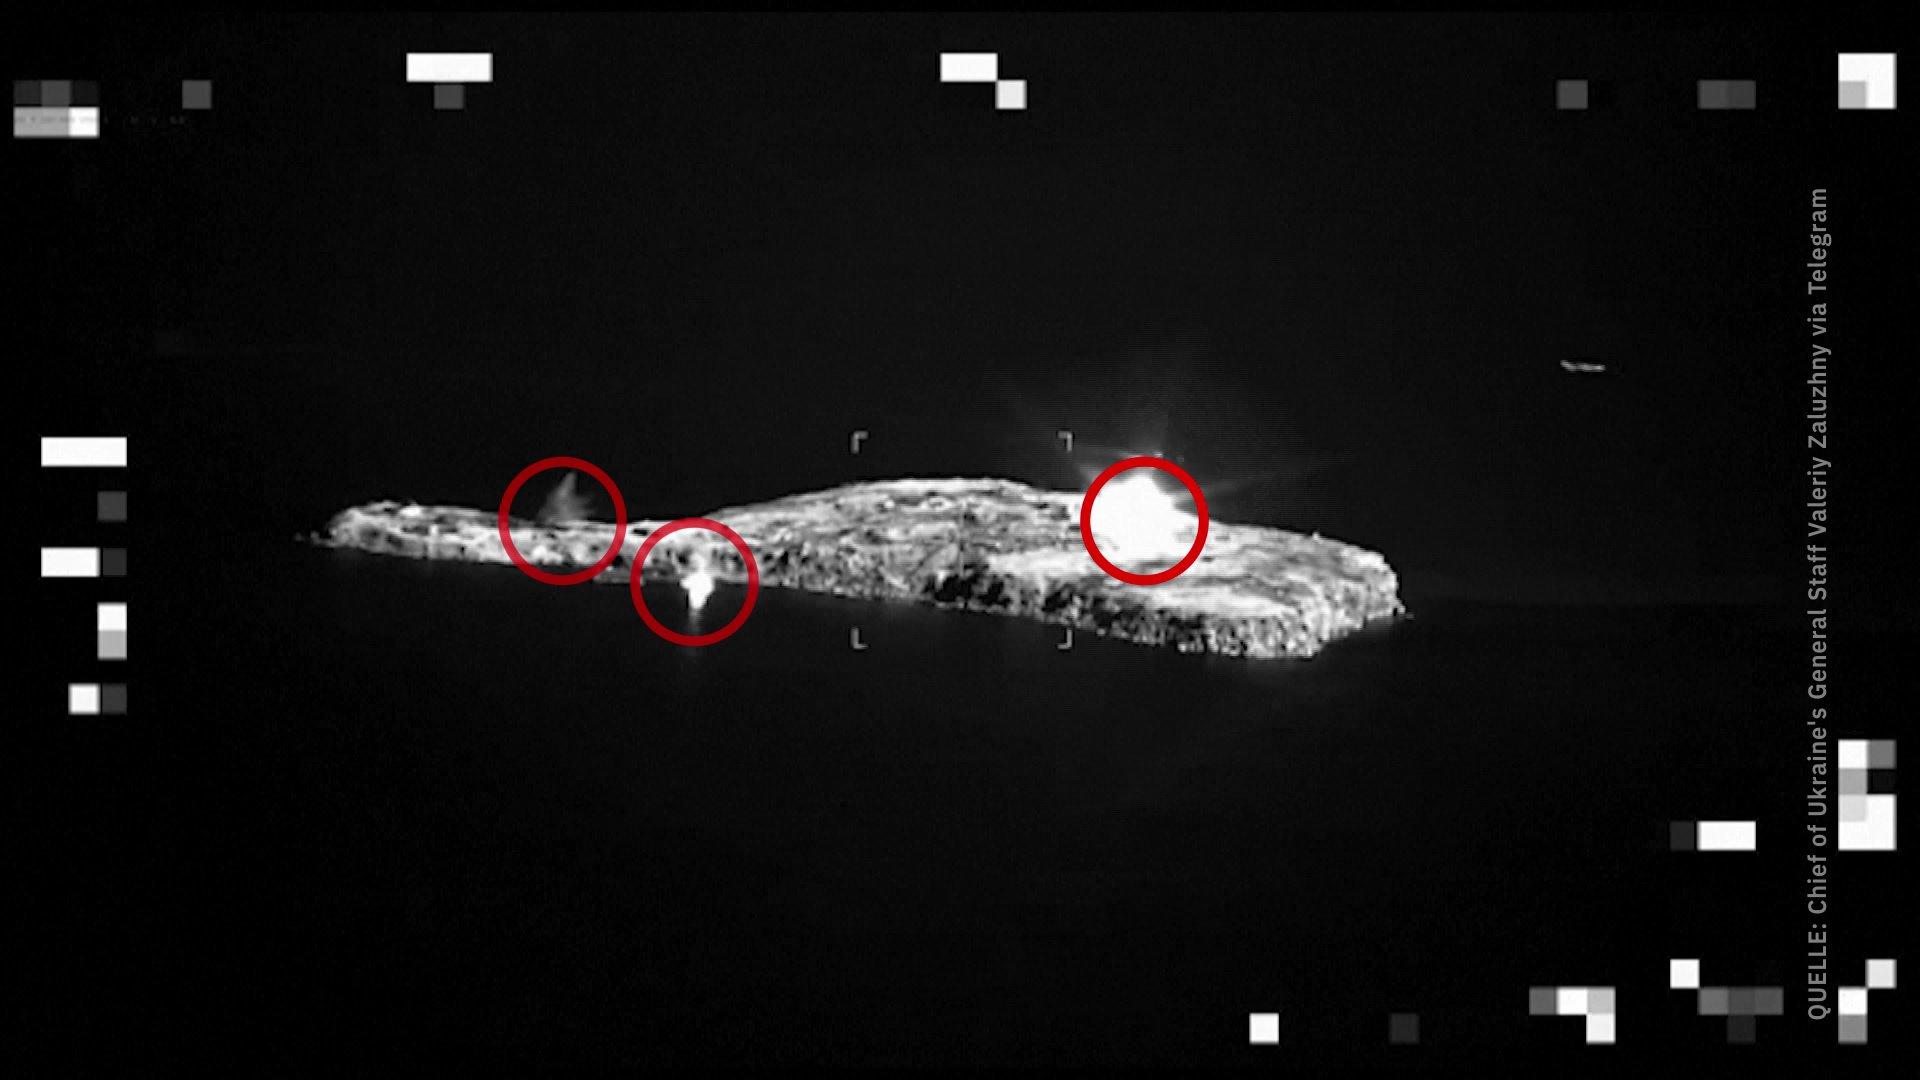 Bilder sollen russischen Phosphorbomben-Einsatz zeigen Angriff auf Schlangeninsel